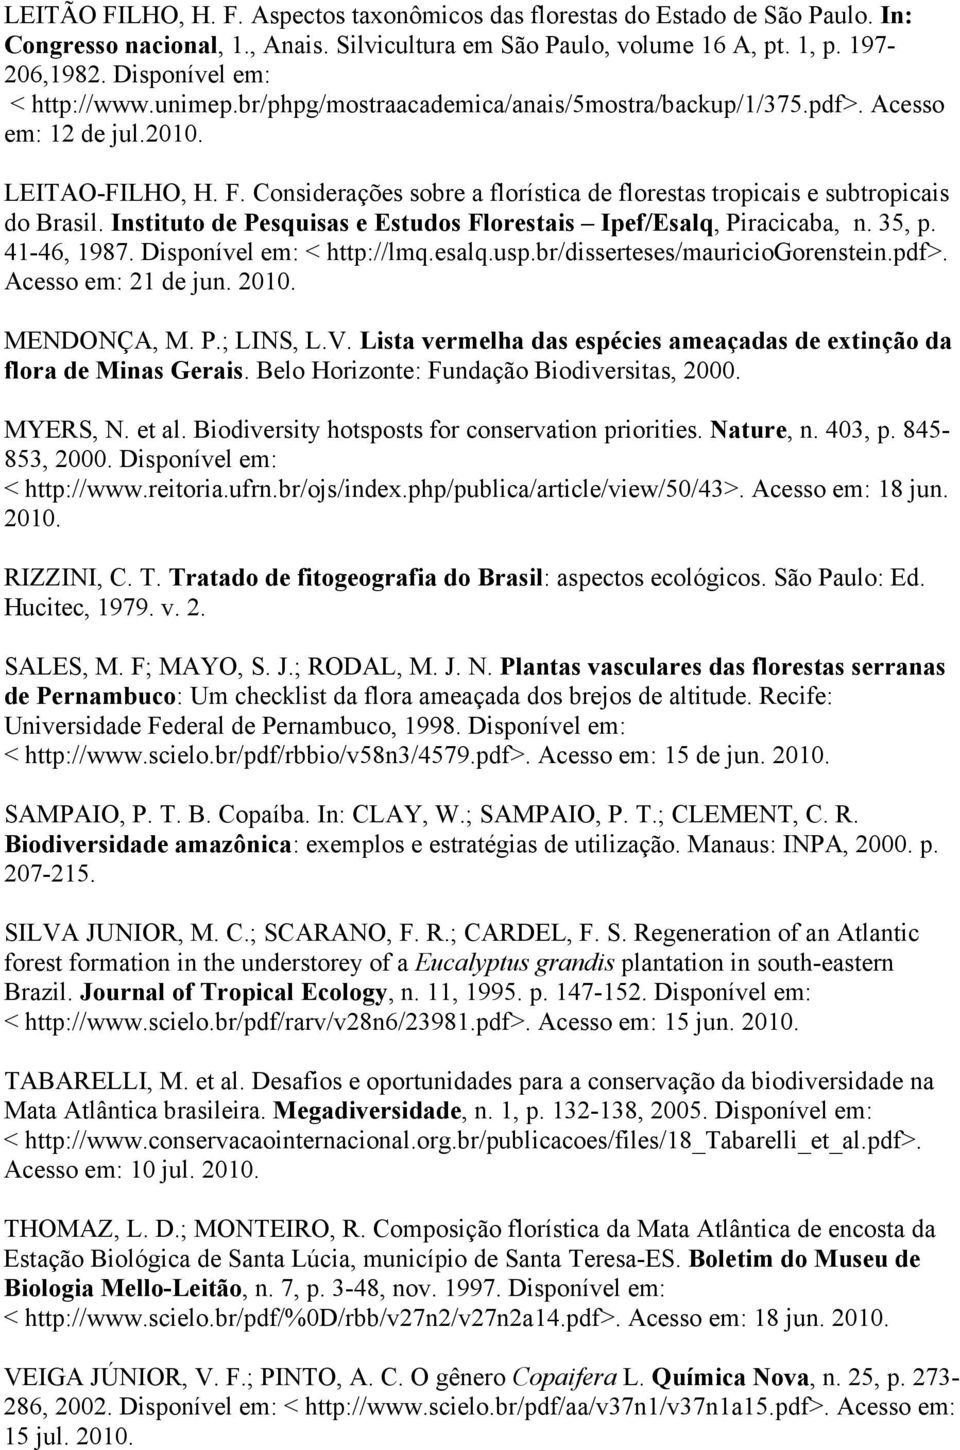 Considerações sobre a florística de florestas tropicais e subtropicais do Brasil. Instituto de Pesquisas e Estudos Florestais Ipef/Esalq, Piracicaba, n. 35, p. 41-46, 1987.